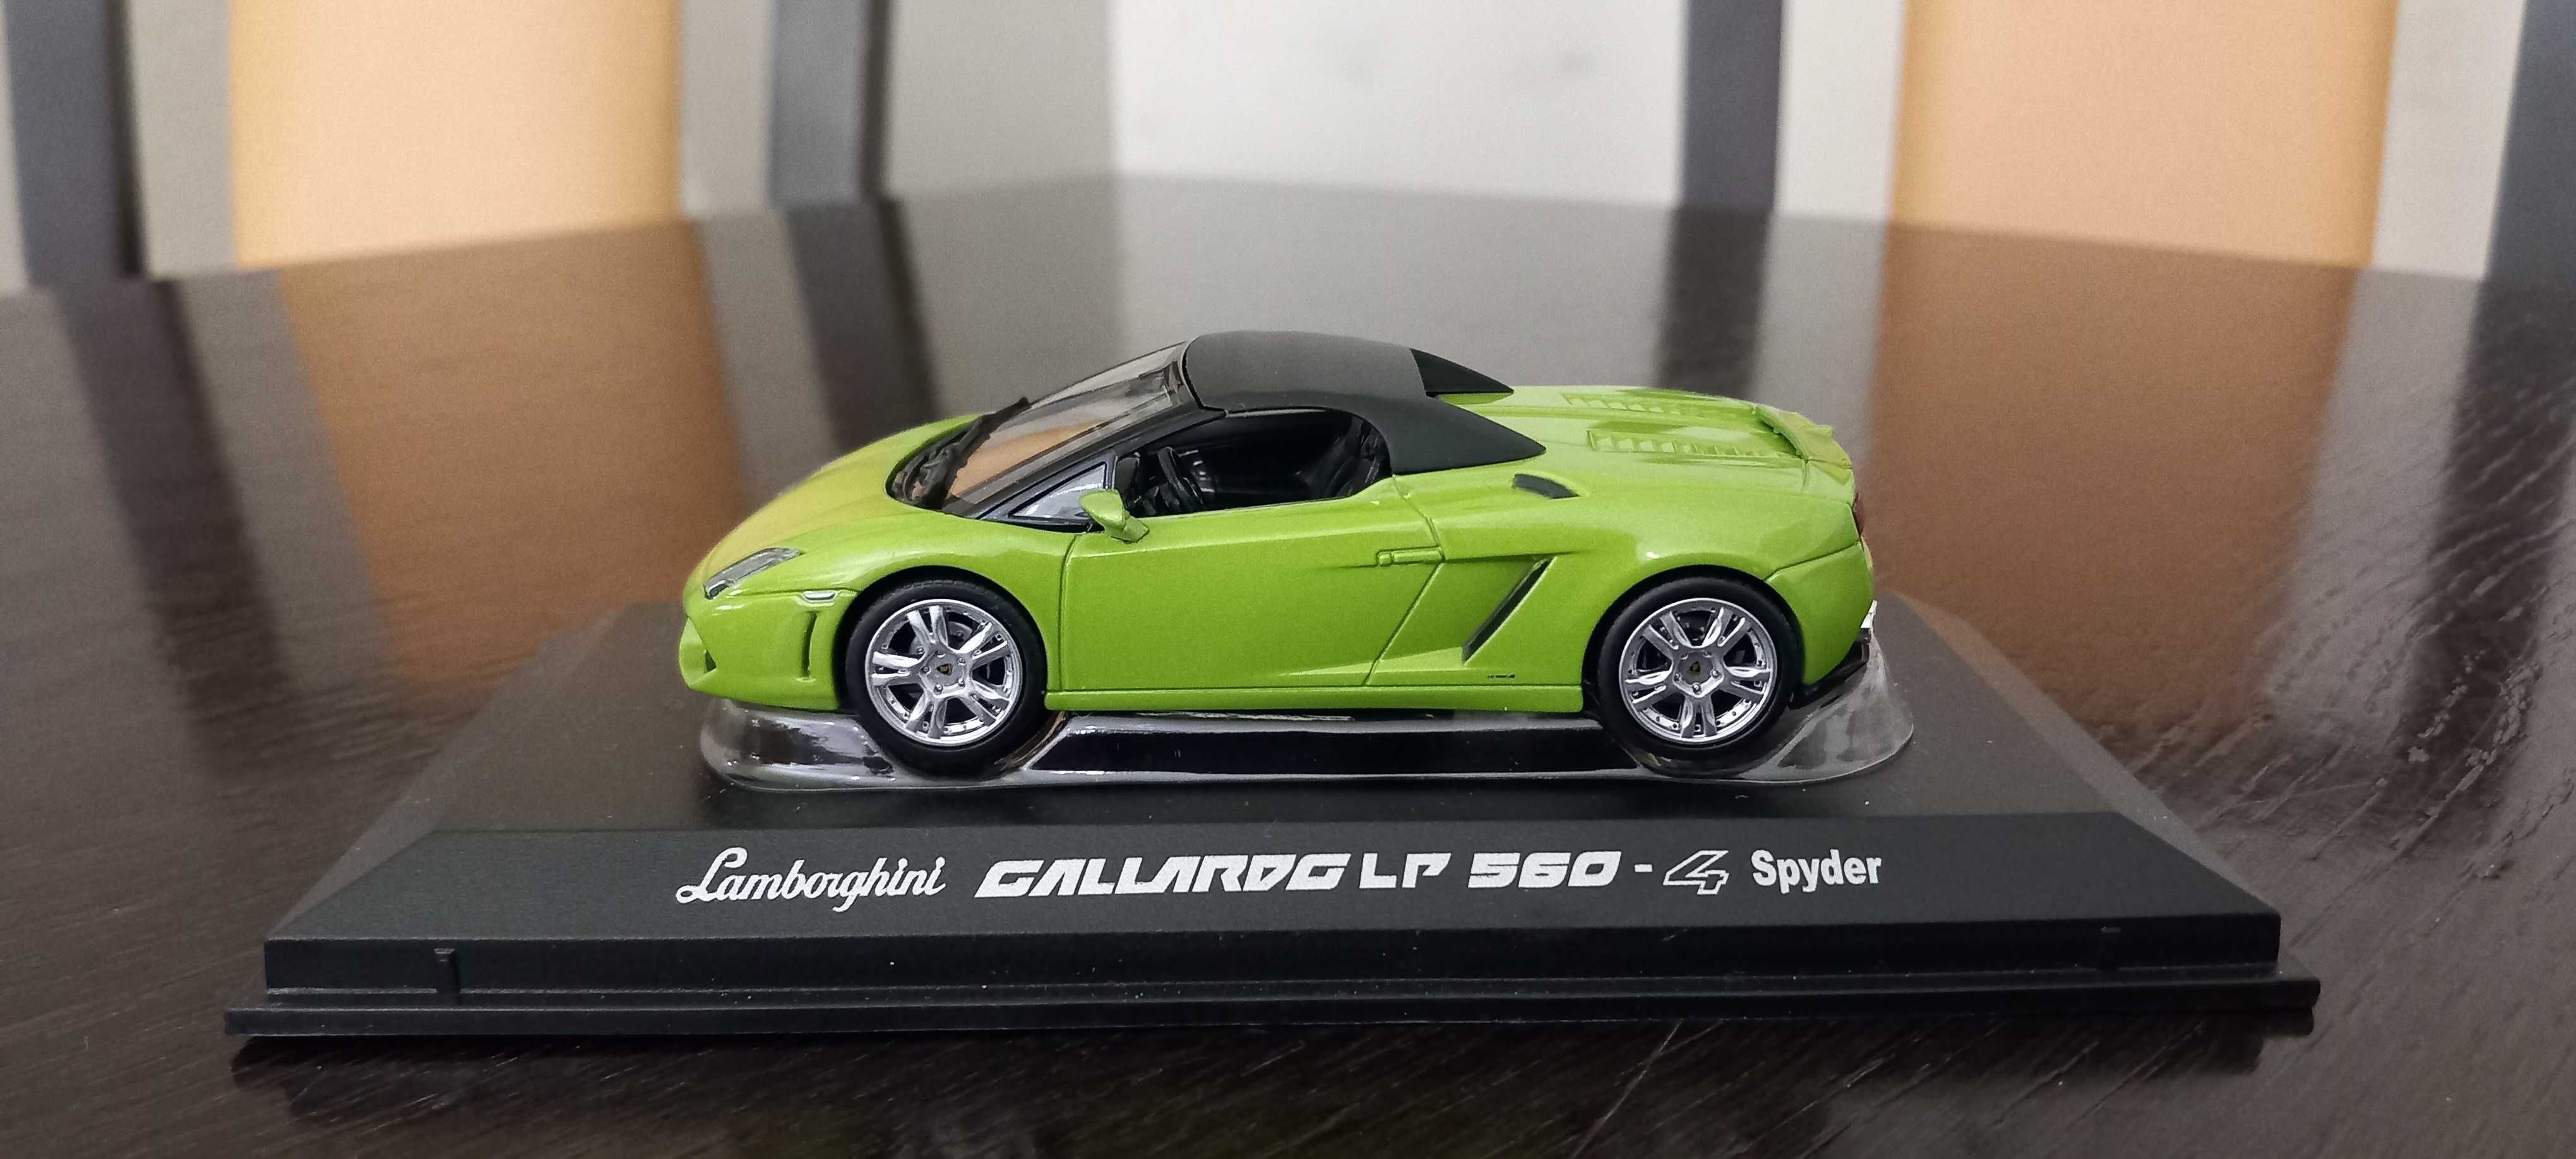 Lamborghini Gallardo LP 560 -4 Spyder  1/43 Norev